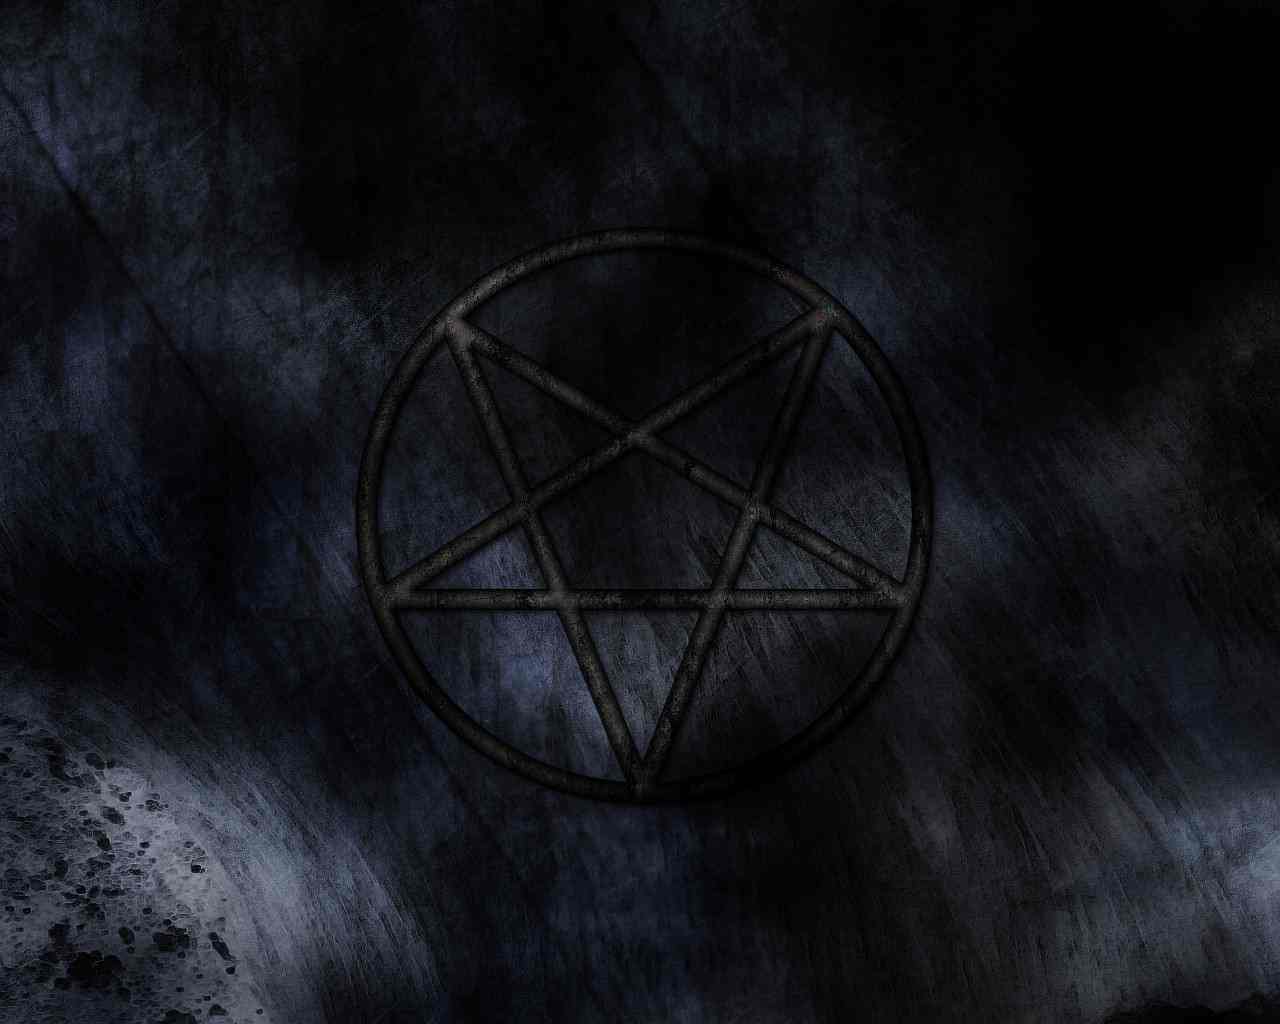 Pentagram Background